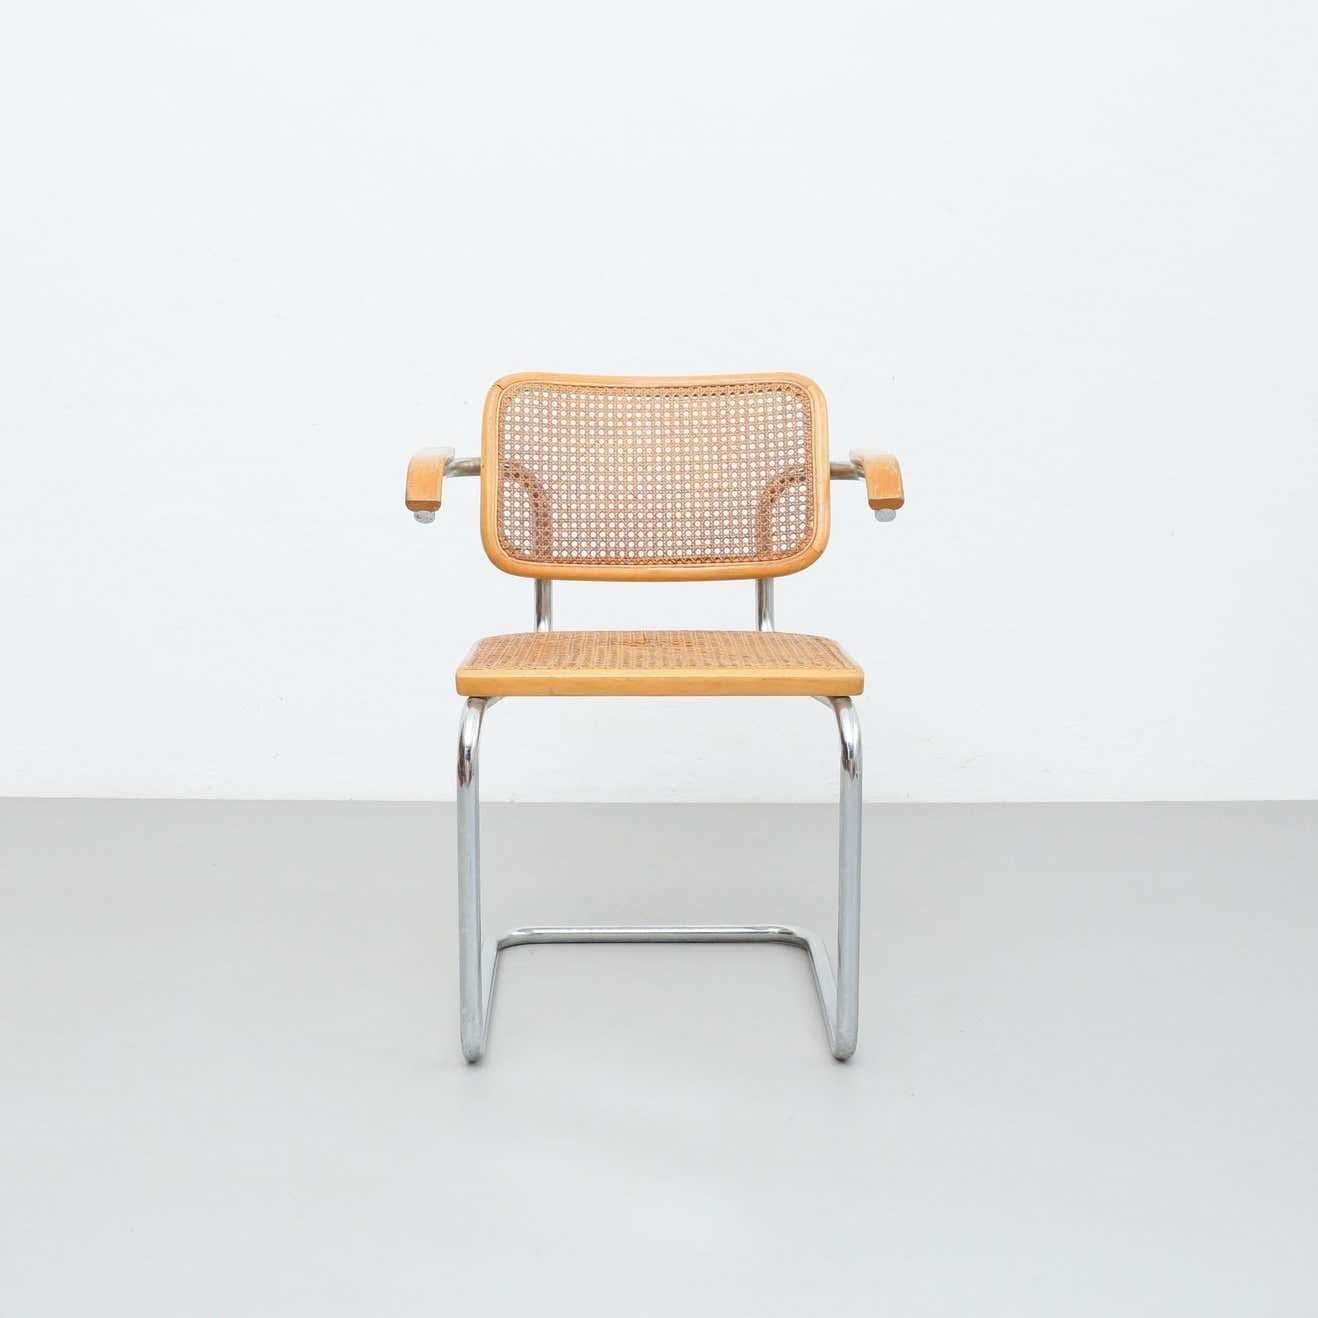 Stuhl, entworfen von Marcel Breuer, hergestellt von Gavina, Italien.

Originaler Zustand mit geringen alters- und gebrauchsbedingten Abnutzungserscheinungen, der eine schöne Patina aufweist.
Der Sitz hat eine kleine Bruchstelle am